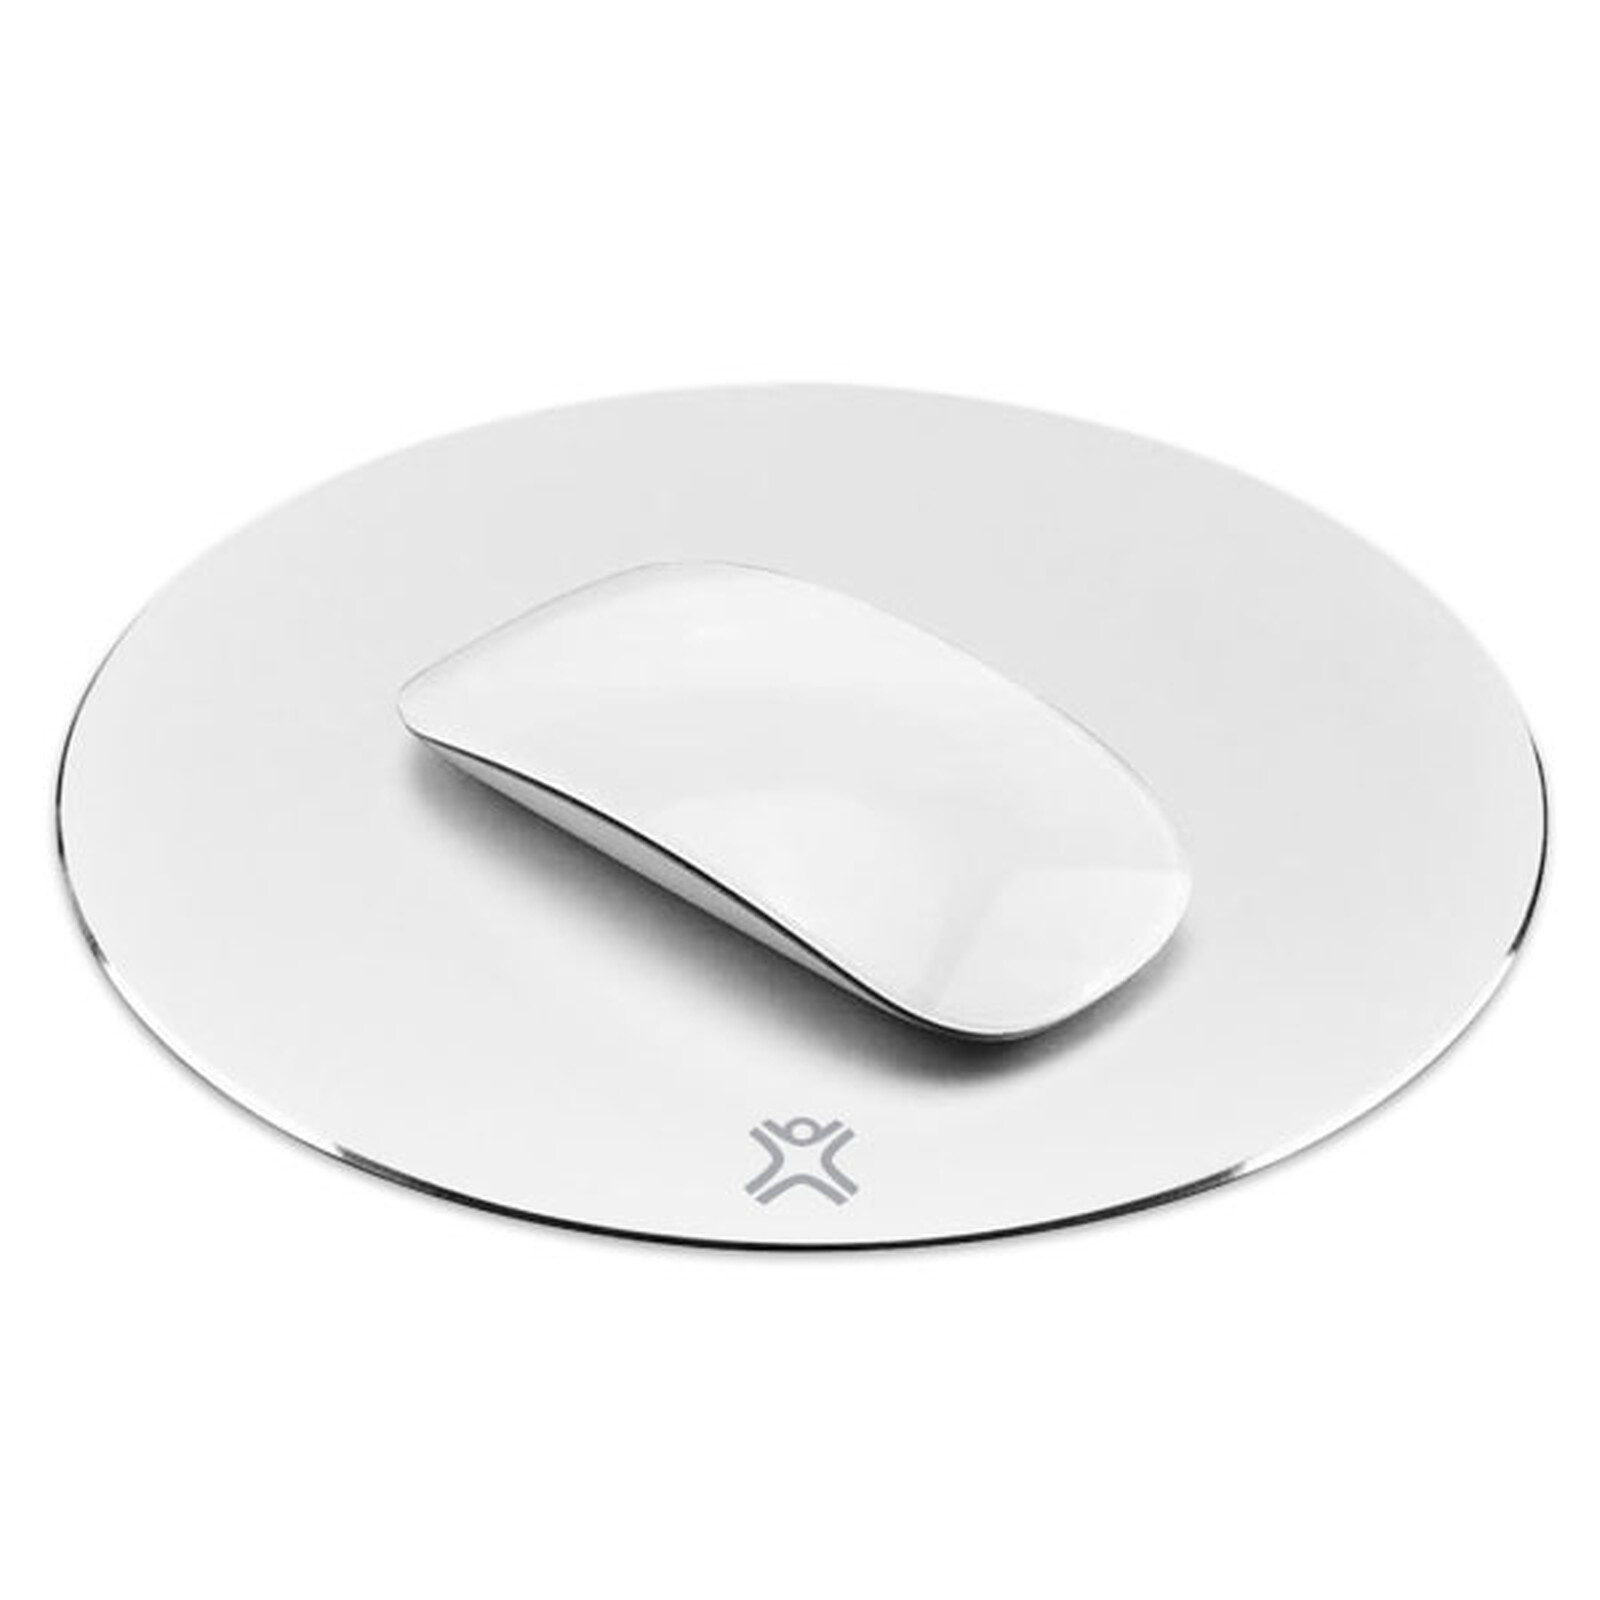 Tappetino per mouse in alluminio XtremeMac (bianco) - Tappetino mouse -  Garanzia 3 anni LDLC